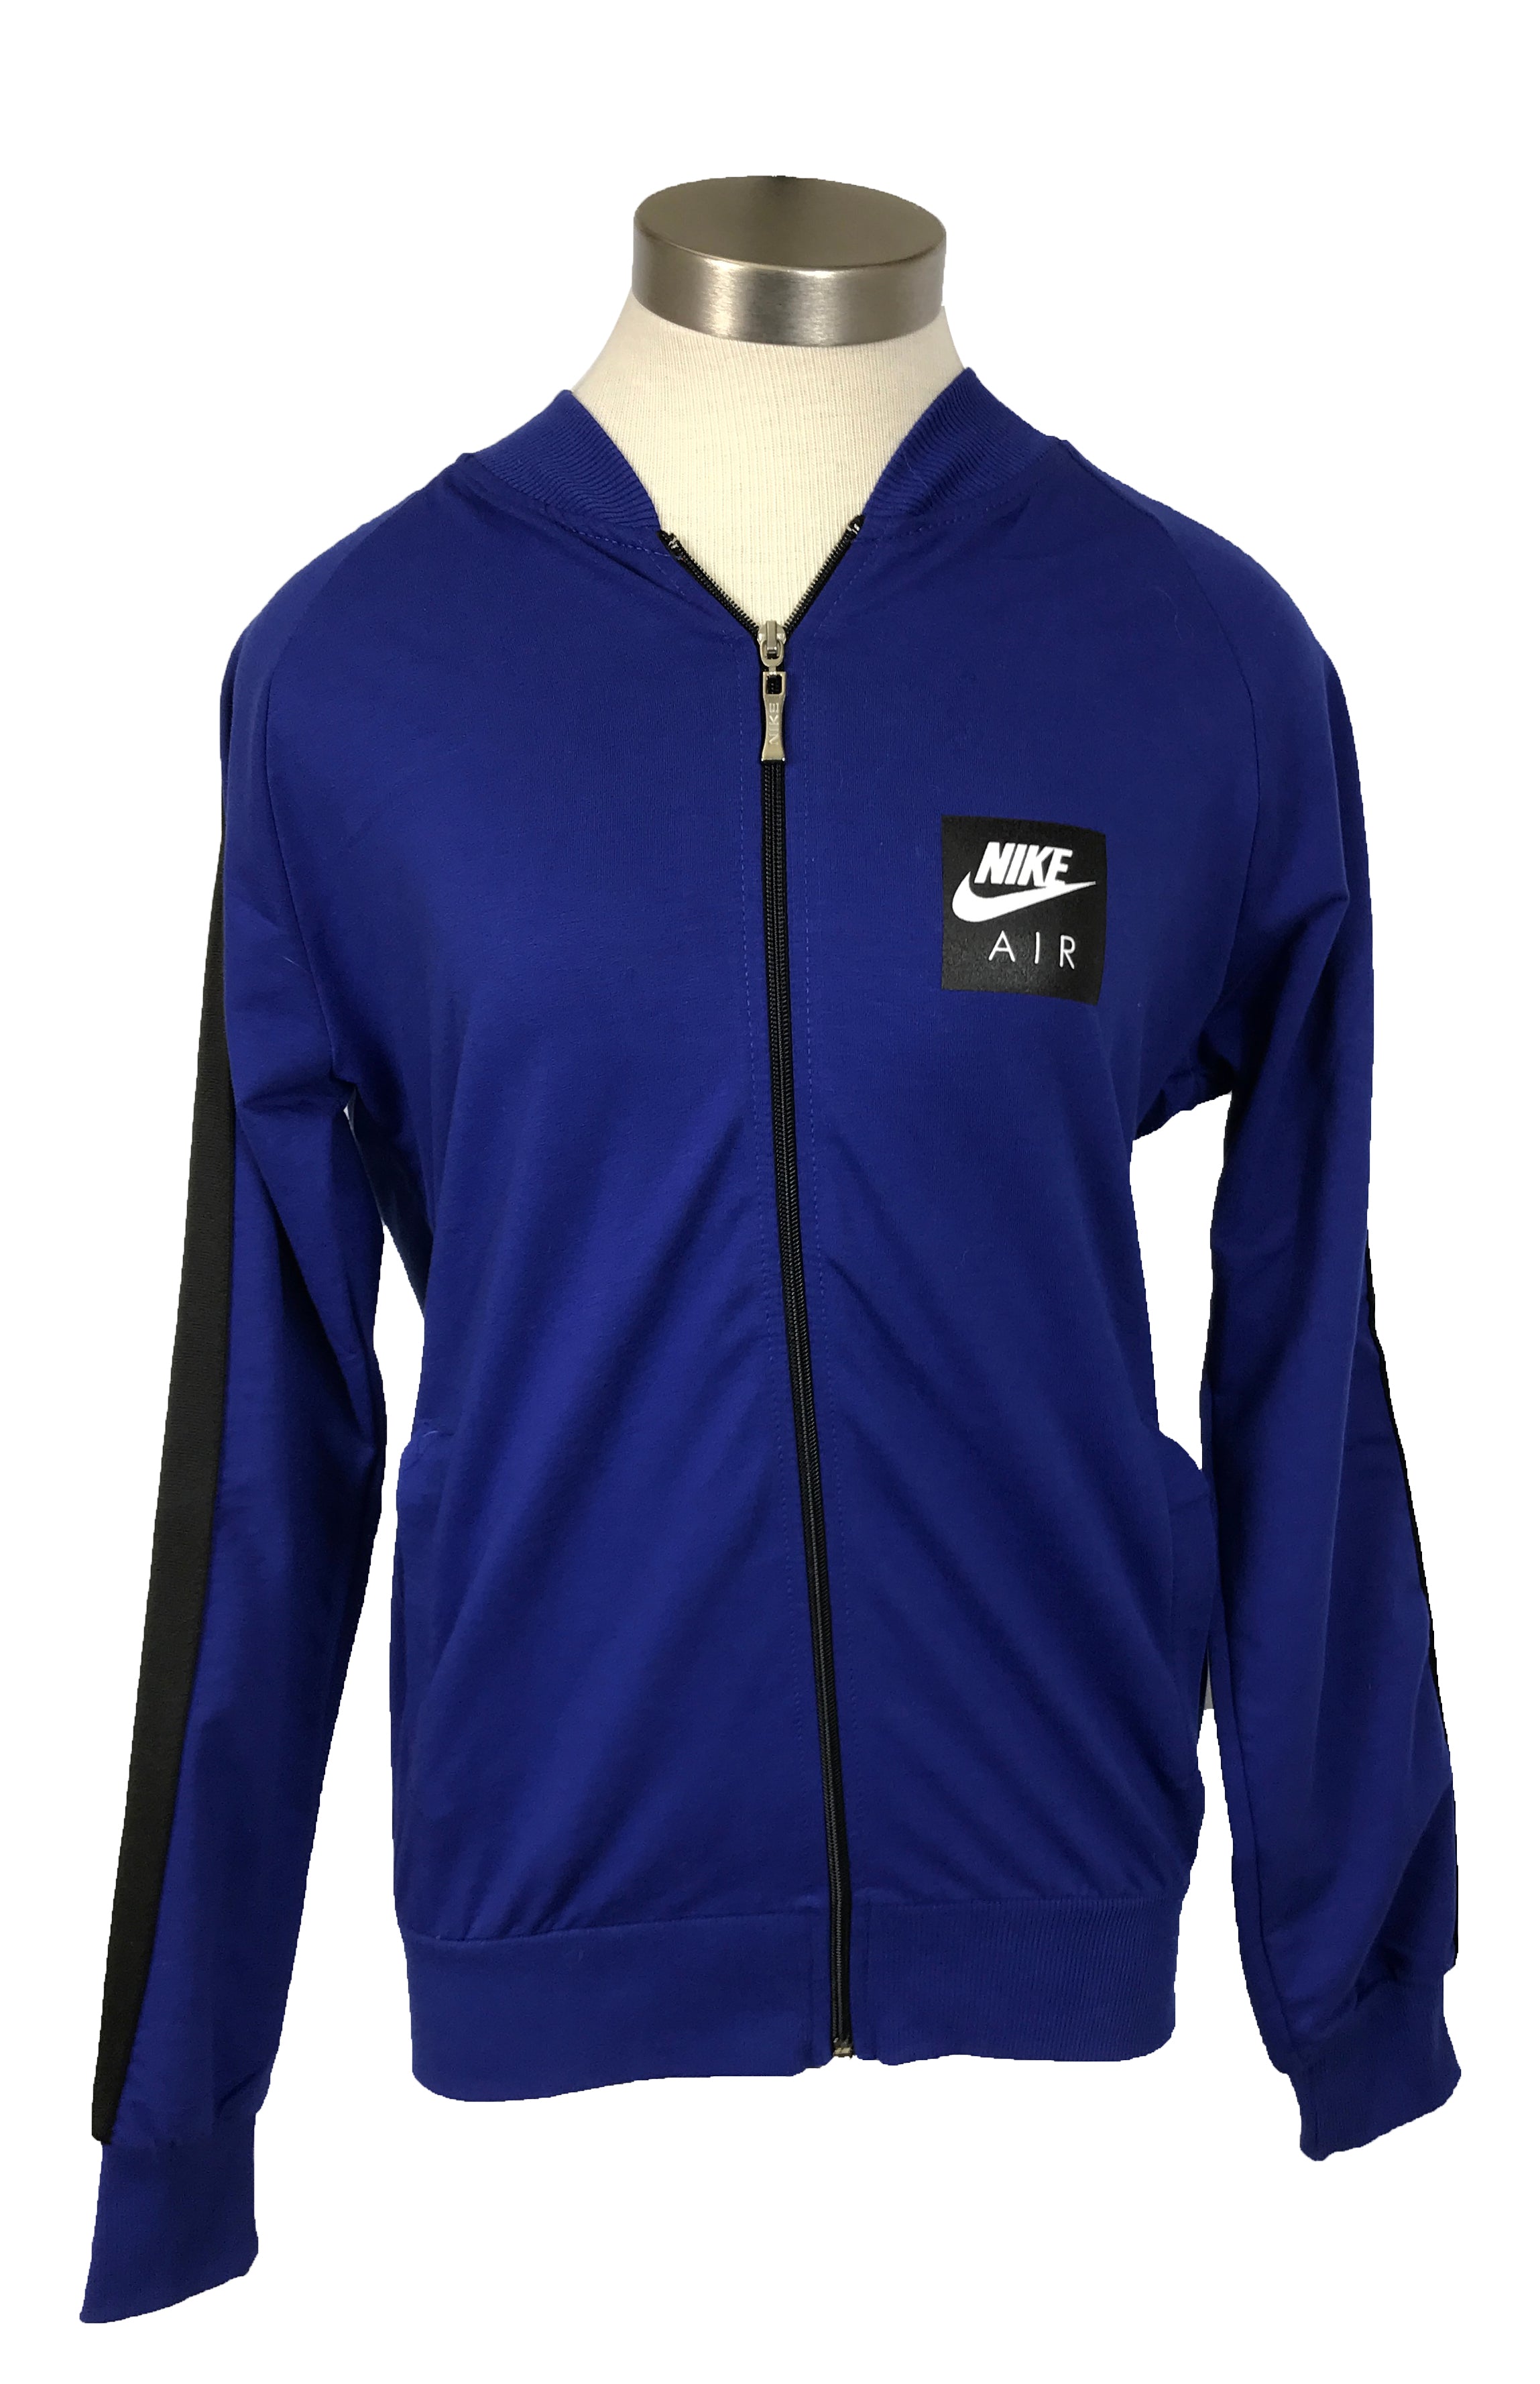 Nike Air Blue Jacket Unisex Size S